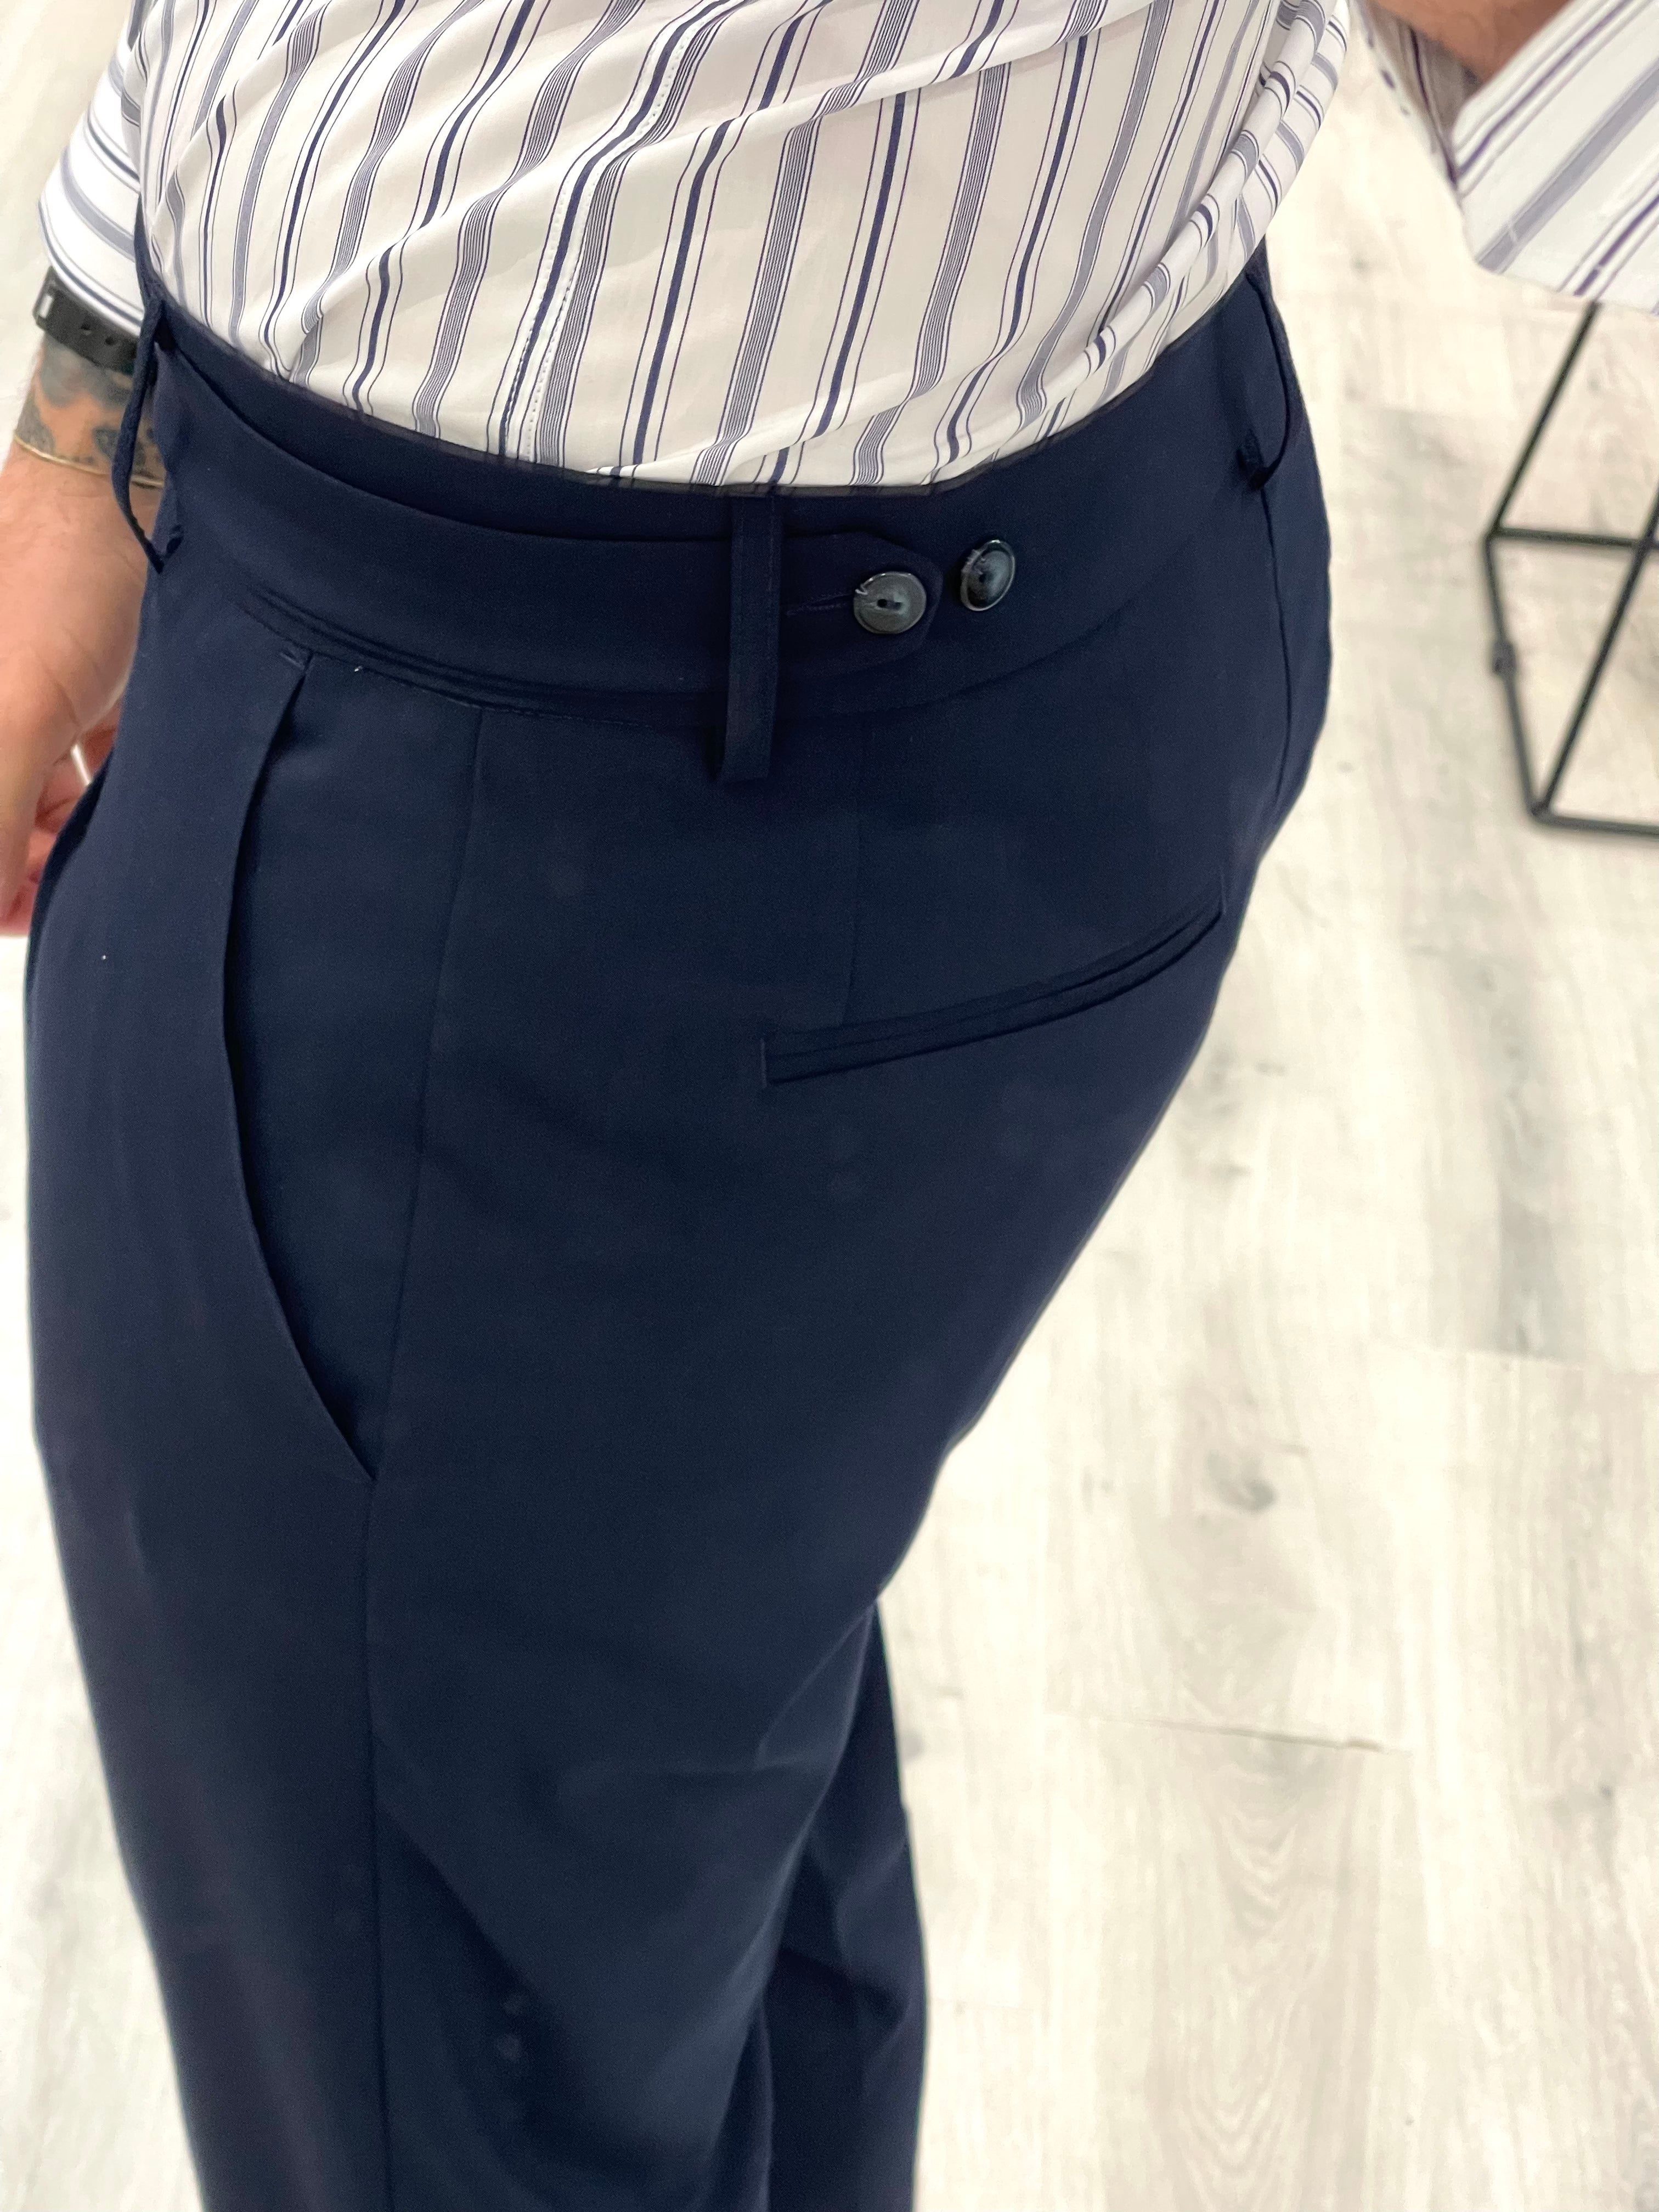 Pantalone sartoriale PARIS con fascione laterale e doppio bottone - BLU NOTTE